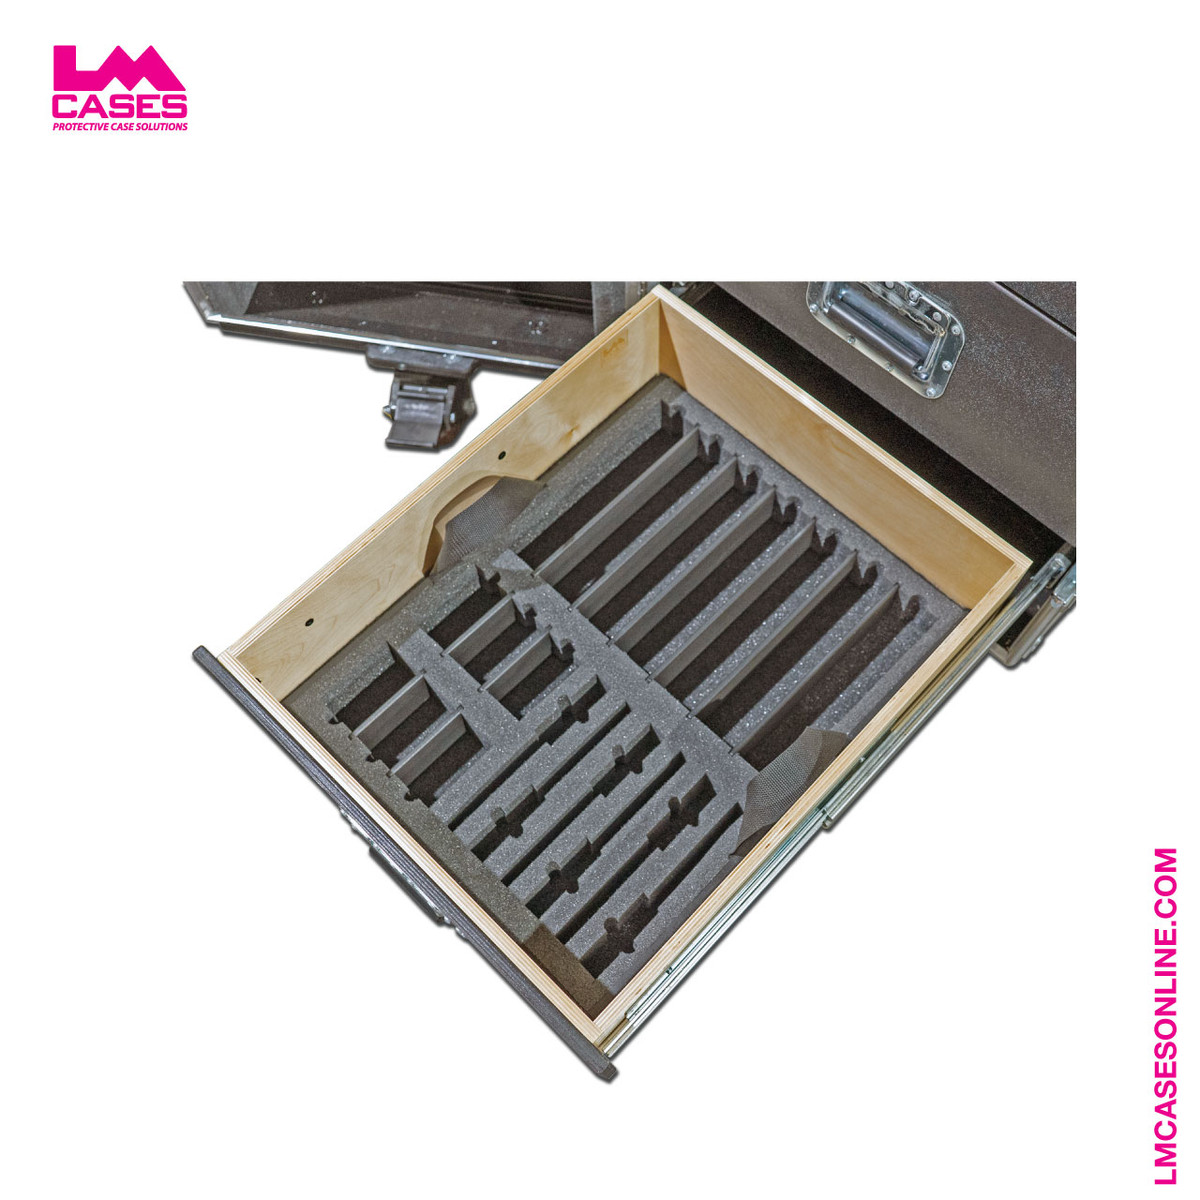 Custom Foam Insert with PE foam 6 wireless mics-drawer insert for